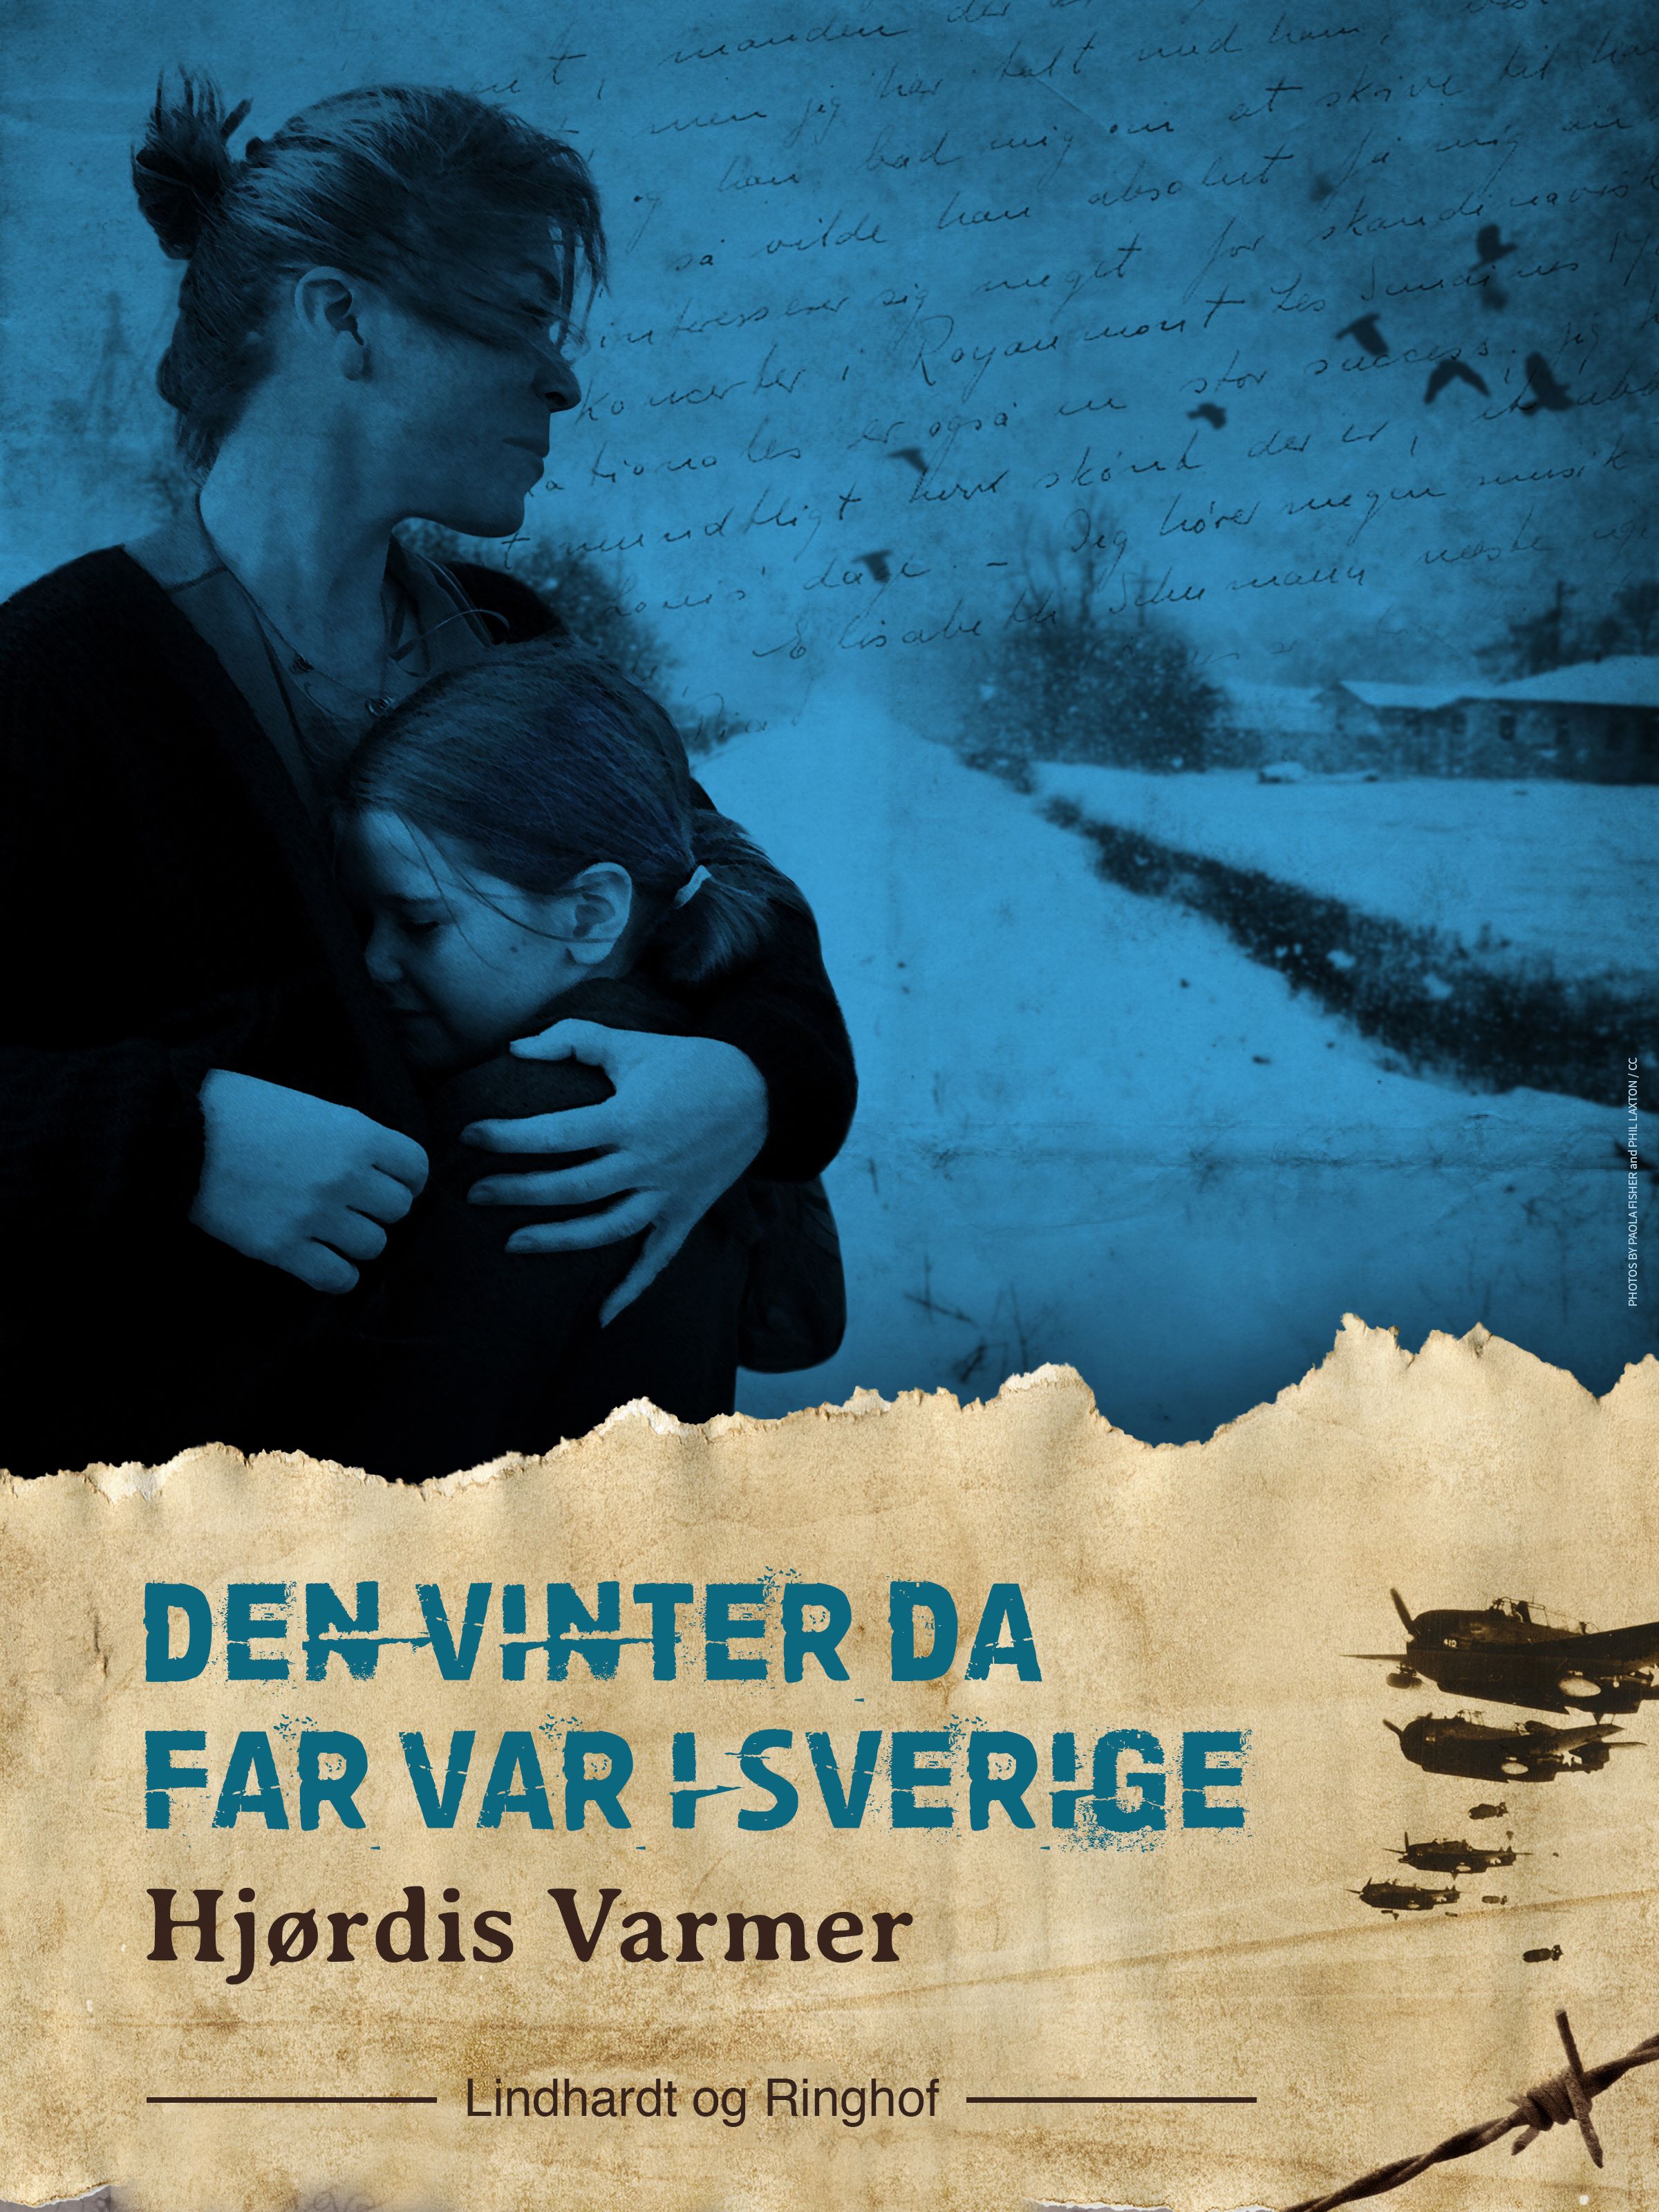 Den vinter da far var i Sverige (2. del af serie), lydbog af Hjørdis Varmer